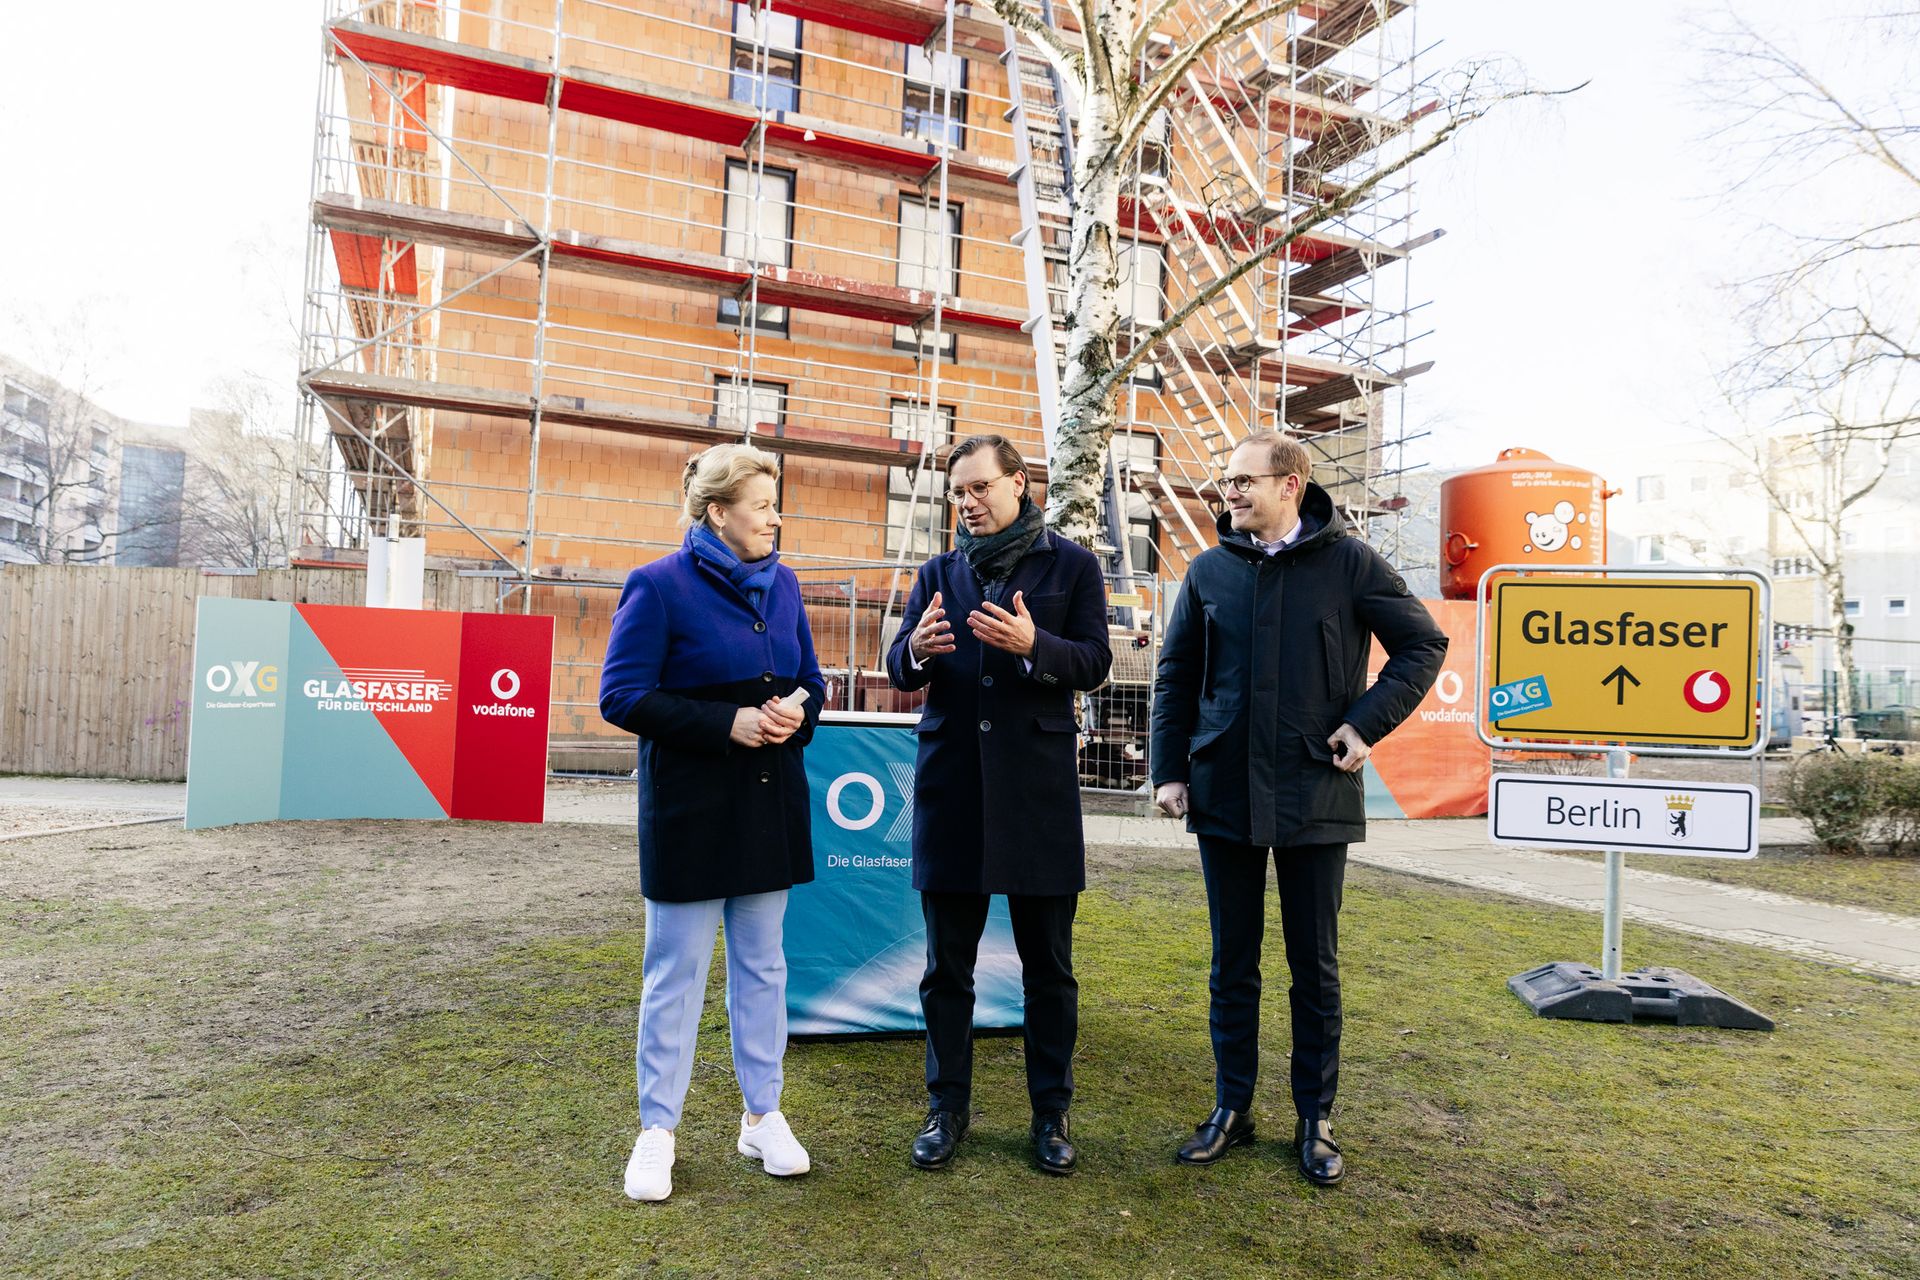 Vodafone Glasfaserausbau: Mit OXG Glasfaser-Offensive in Berlin